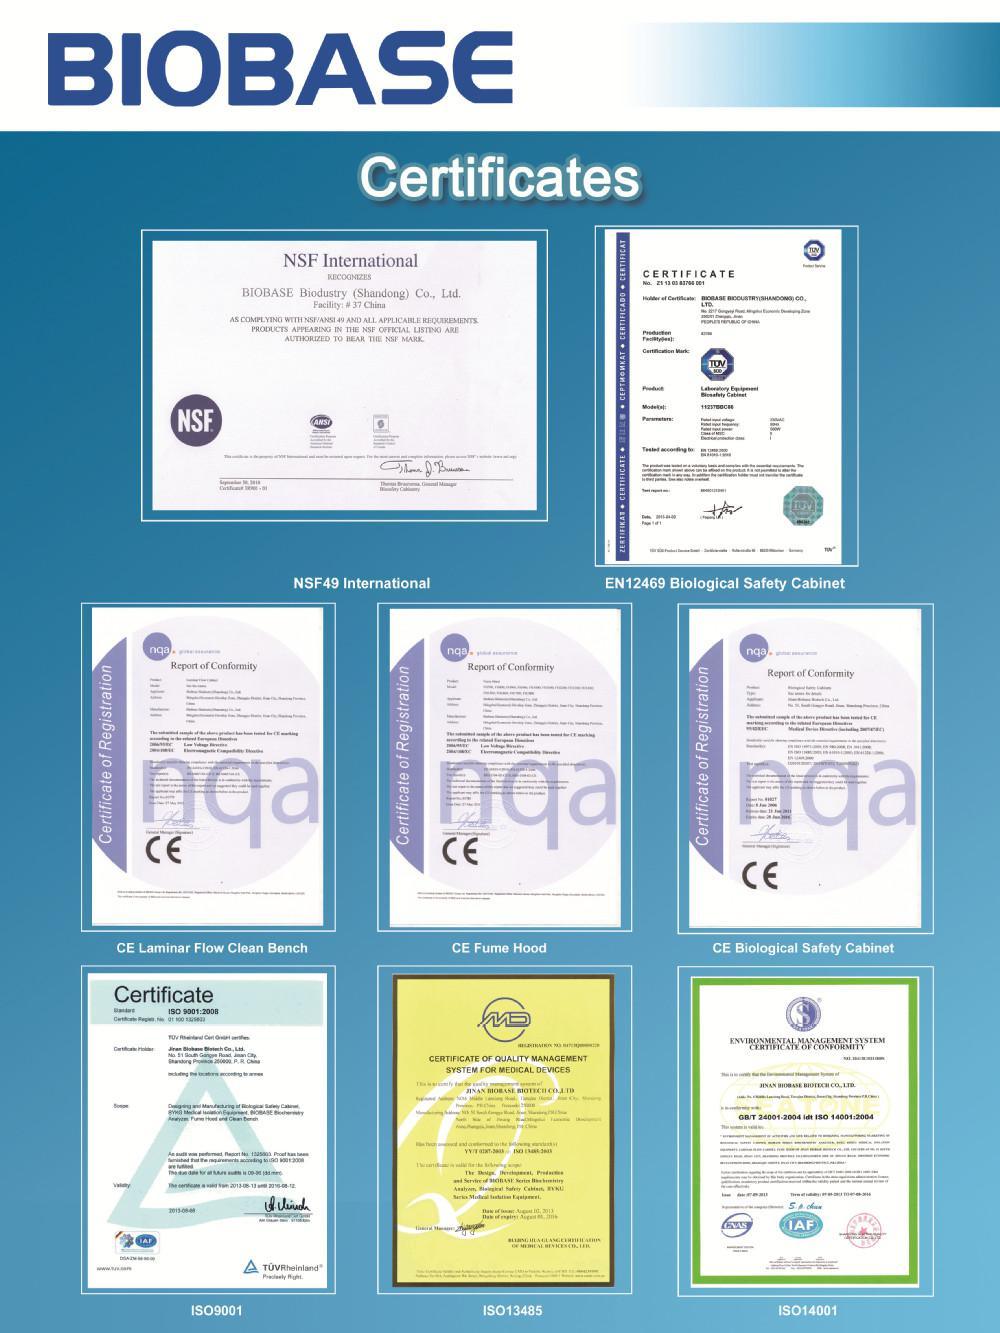 Biobase FDA Certified Automatic Biochemistry Analyzer